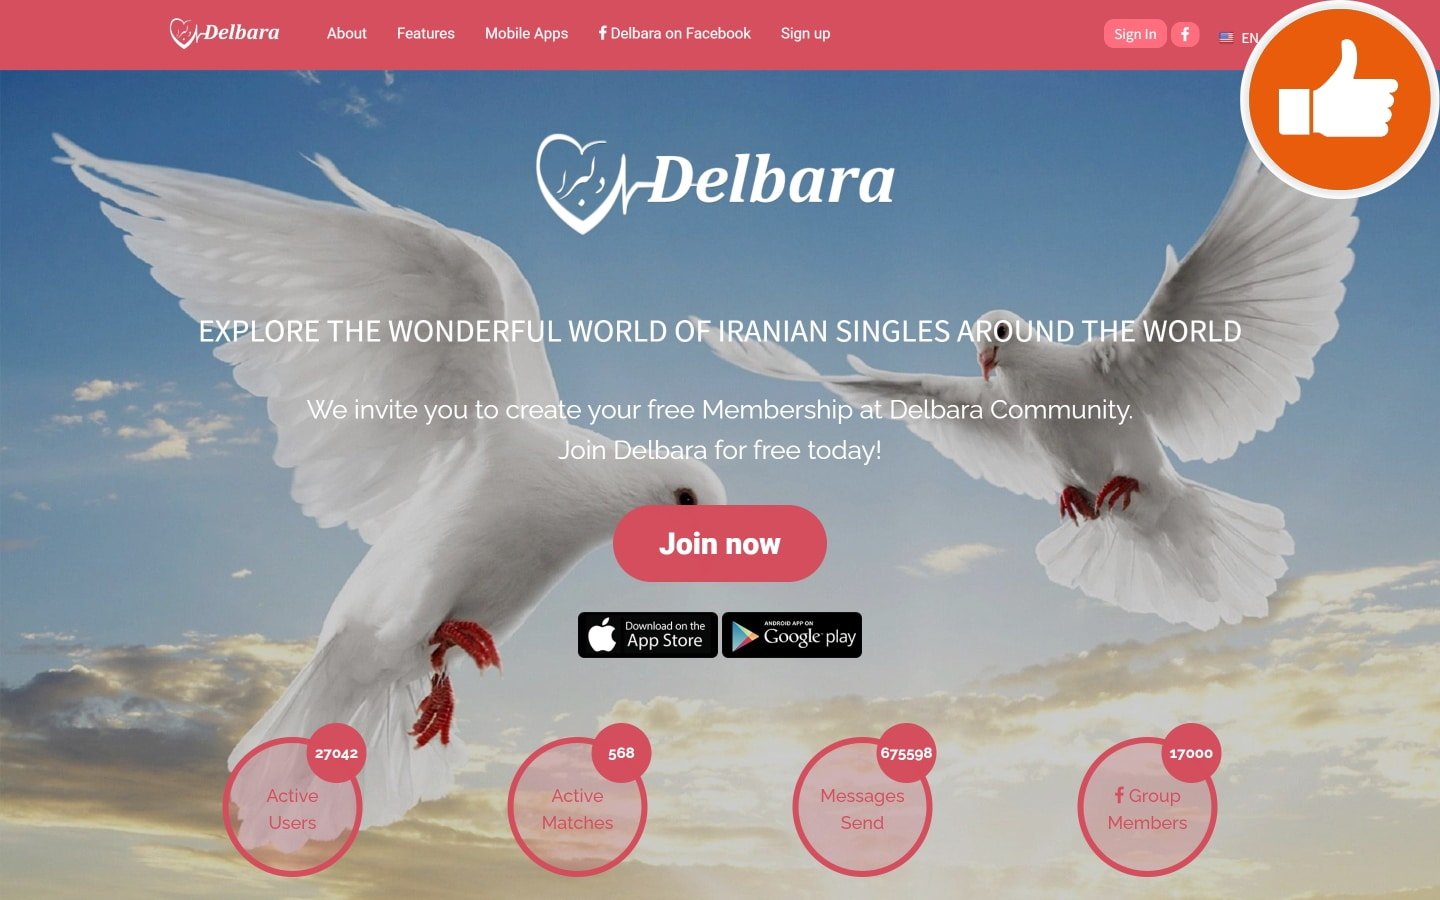 Review Delbara.com scam experience